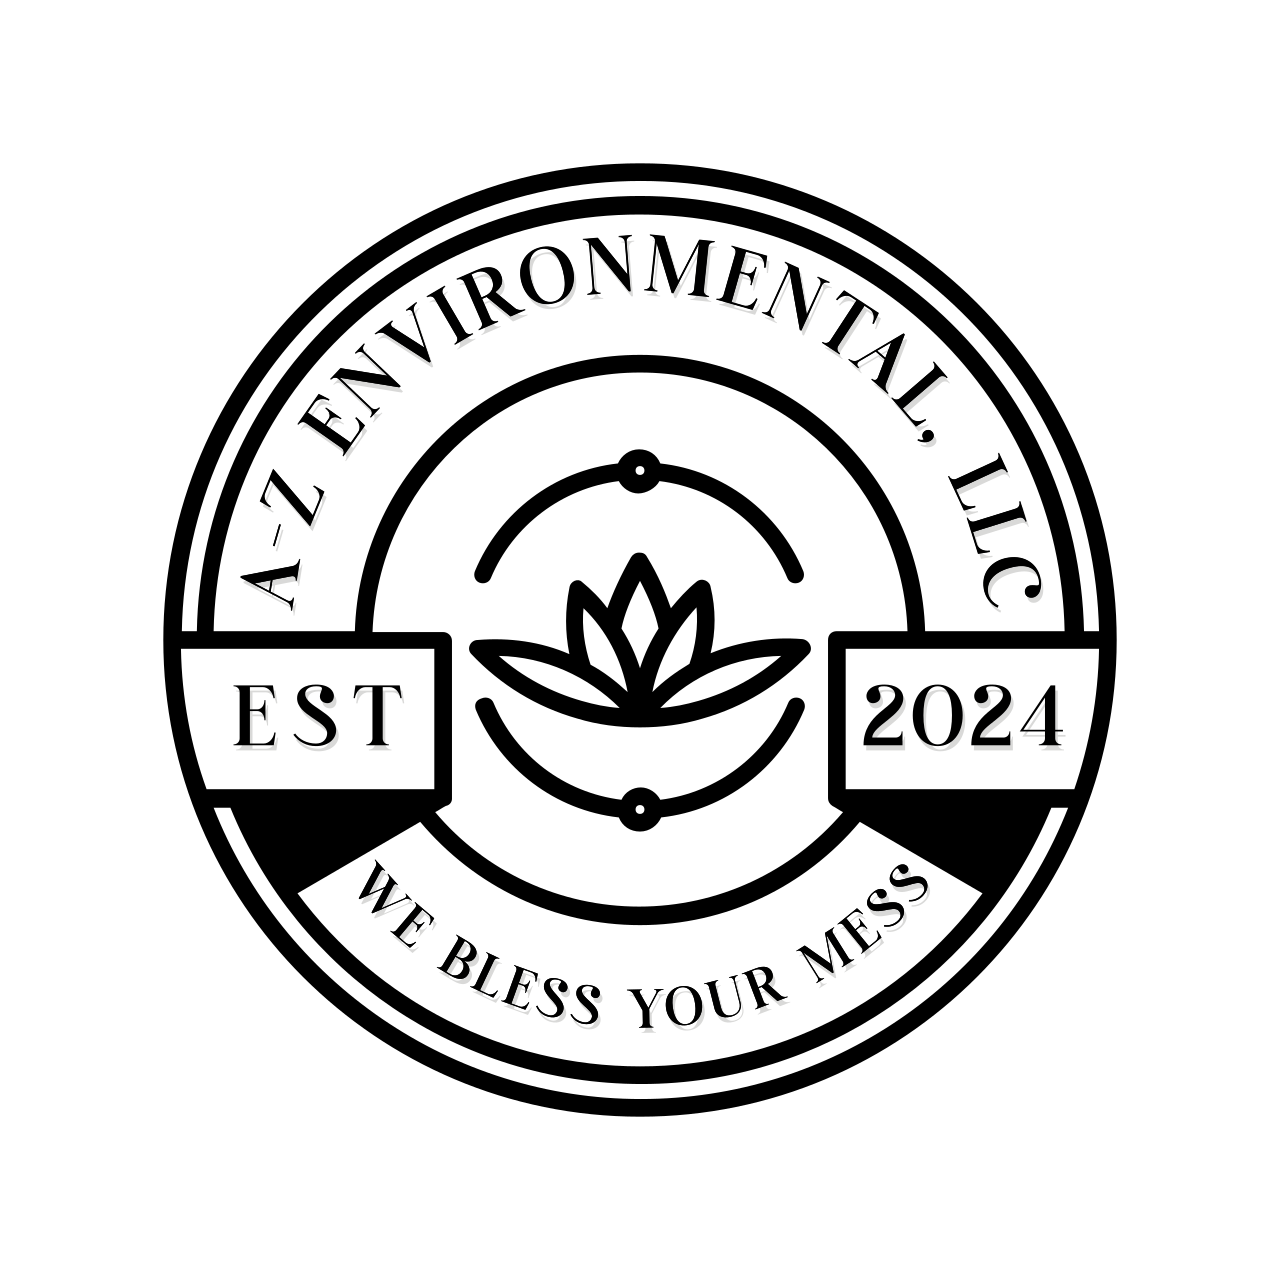 A-Z Environmental, LLC's logo